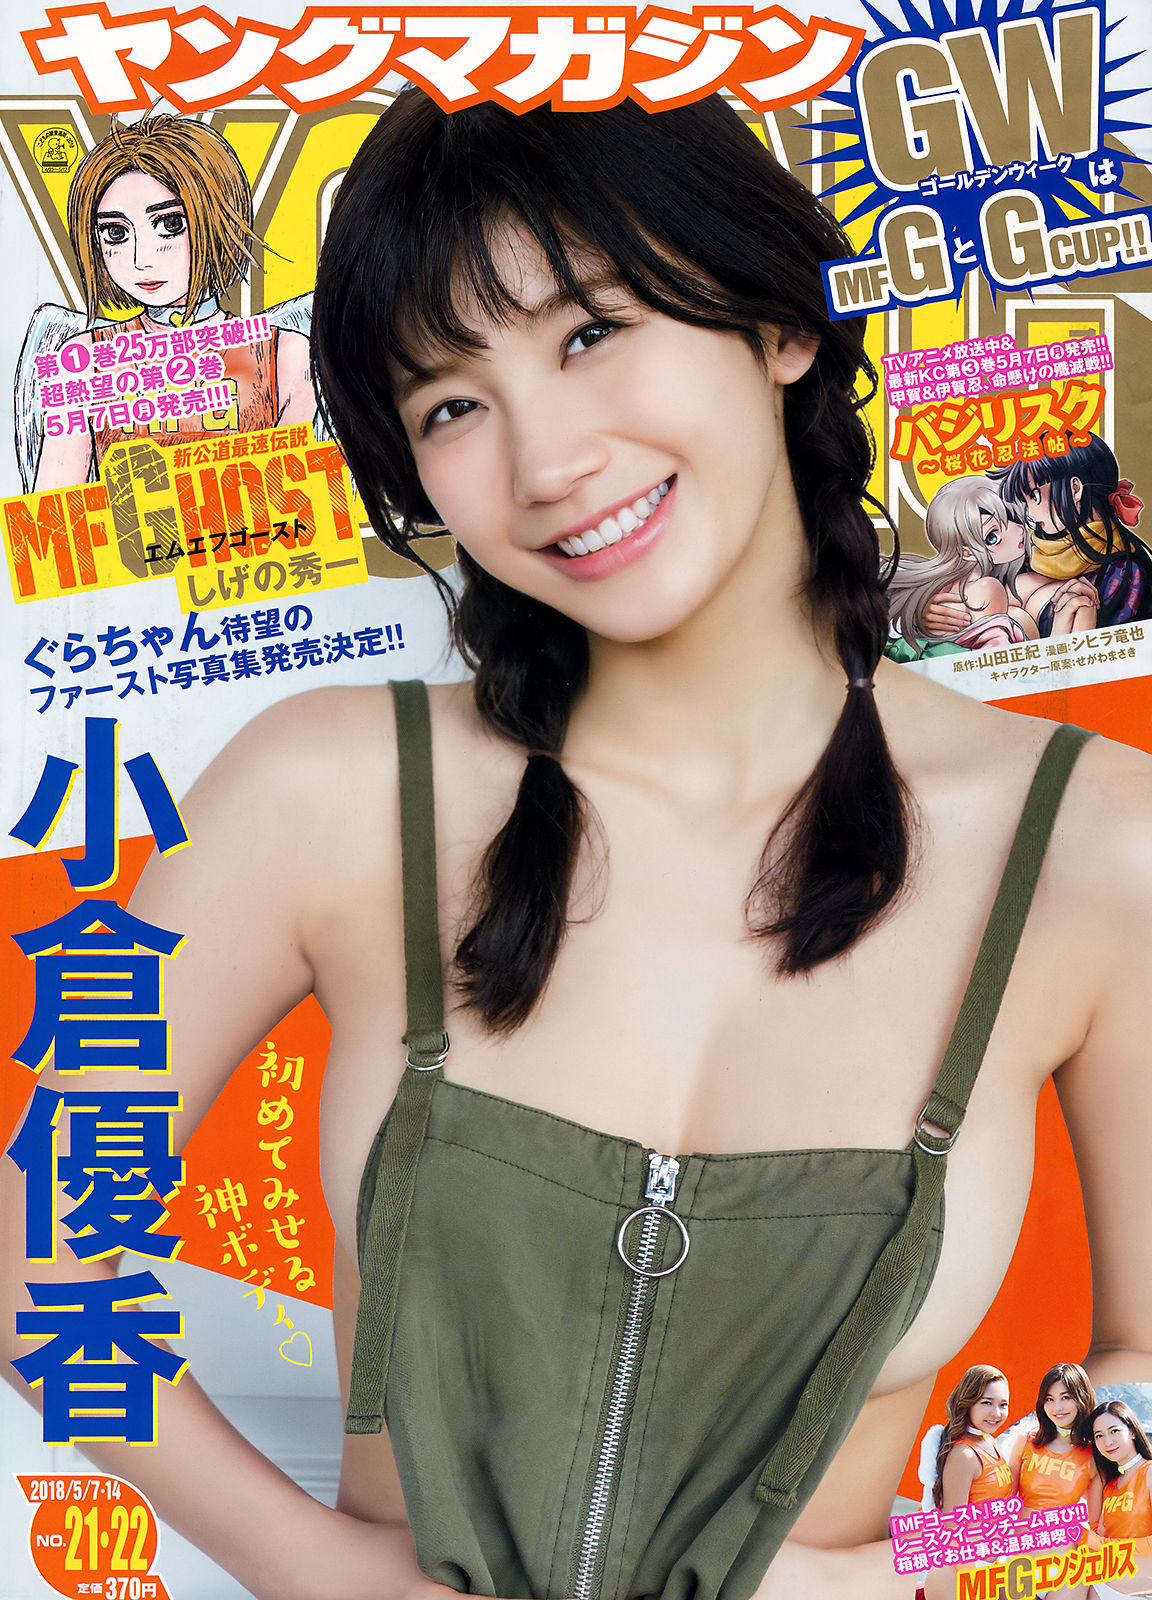 [Young Magazine] 2018年No.21-22 小倉優香 Yuka Ogura